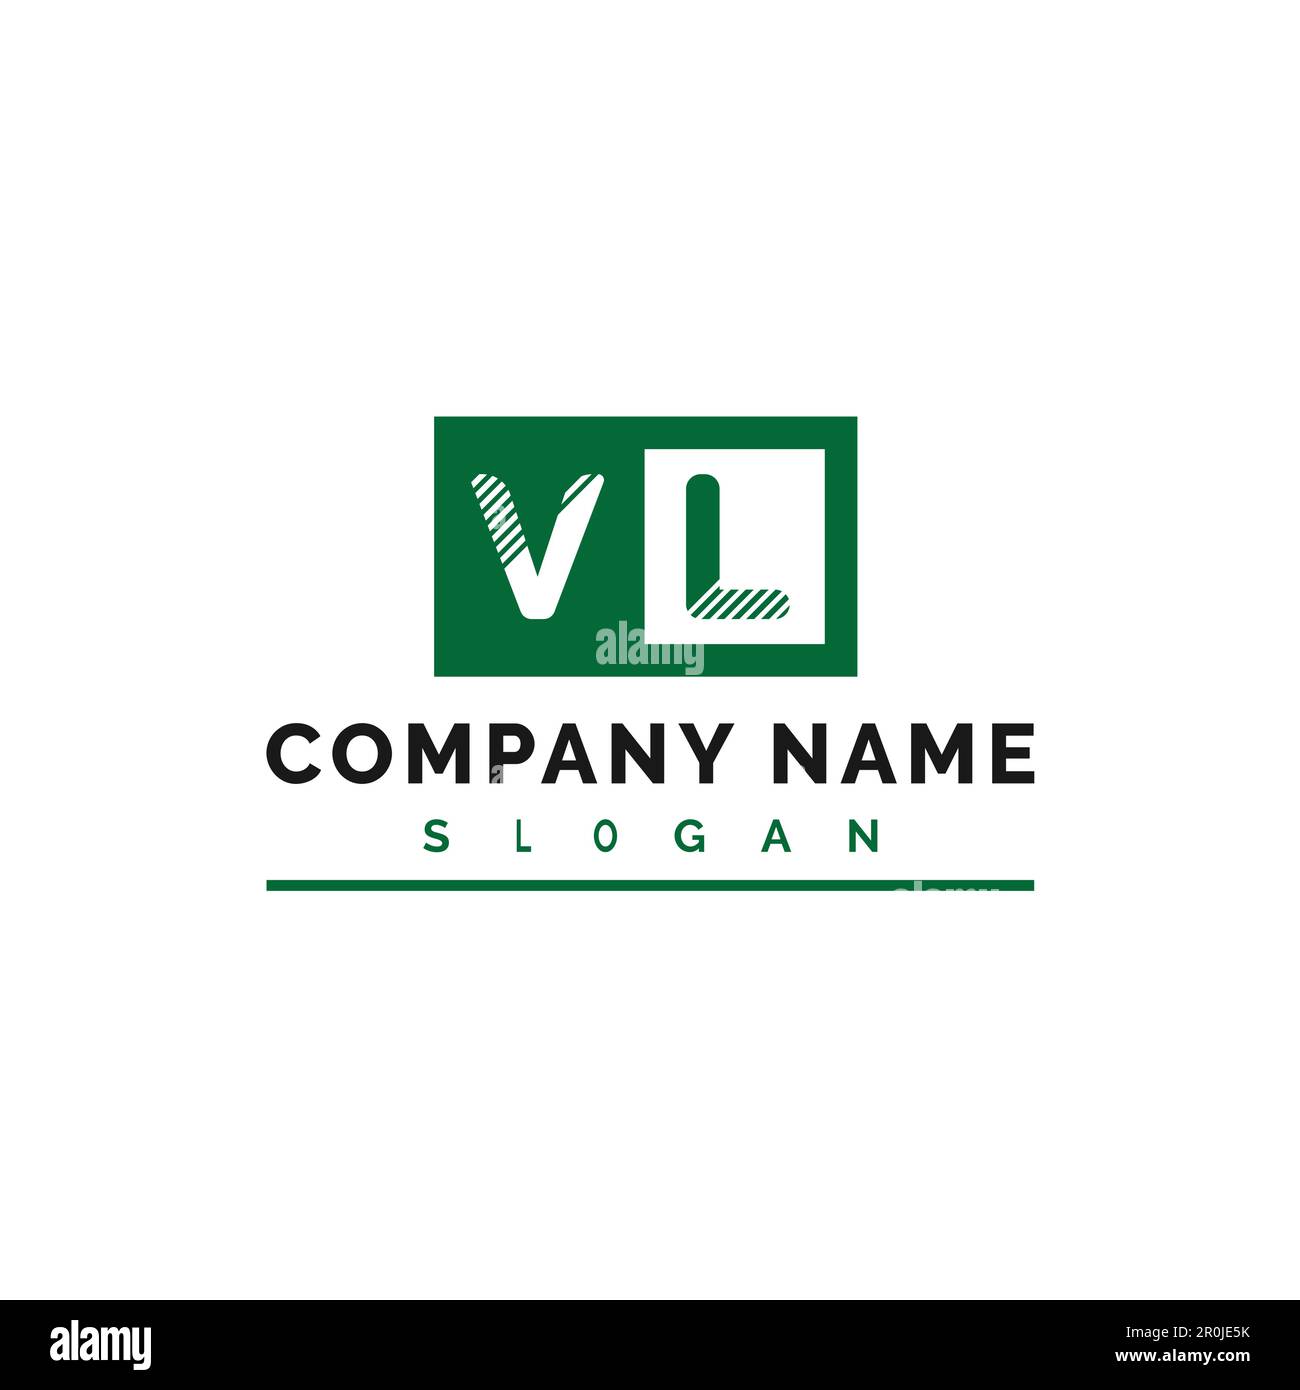 VL Logo Design. VL Letter Logo Vector Illustration - Vector Stock